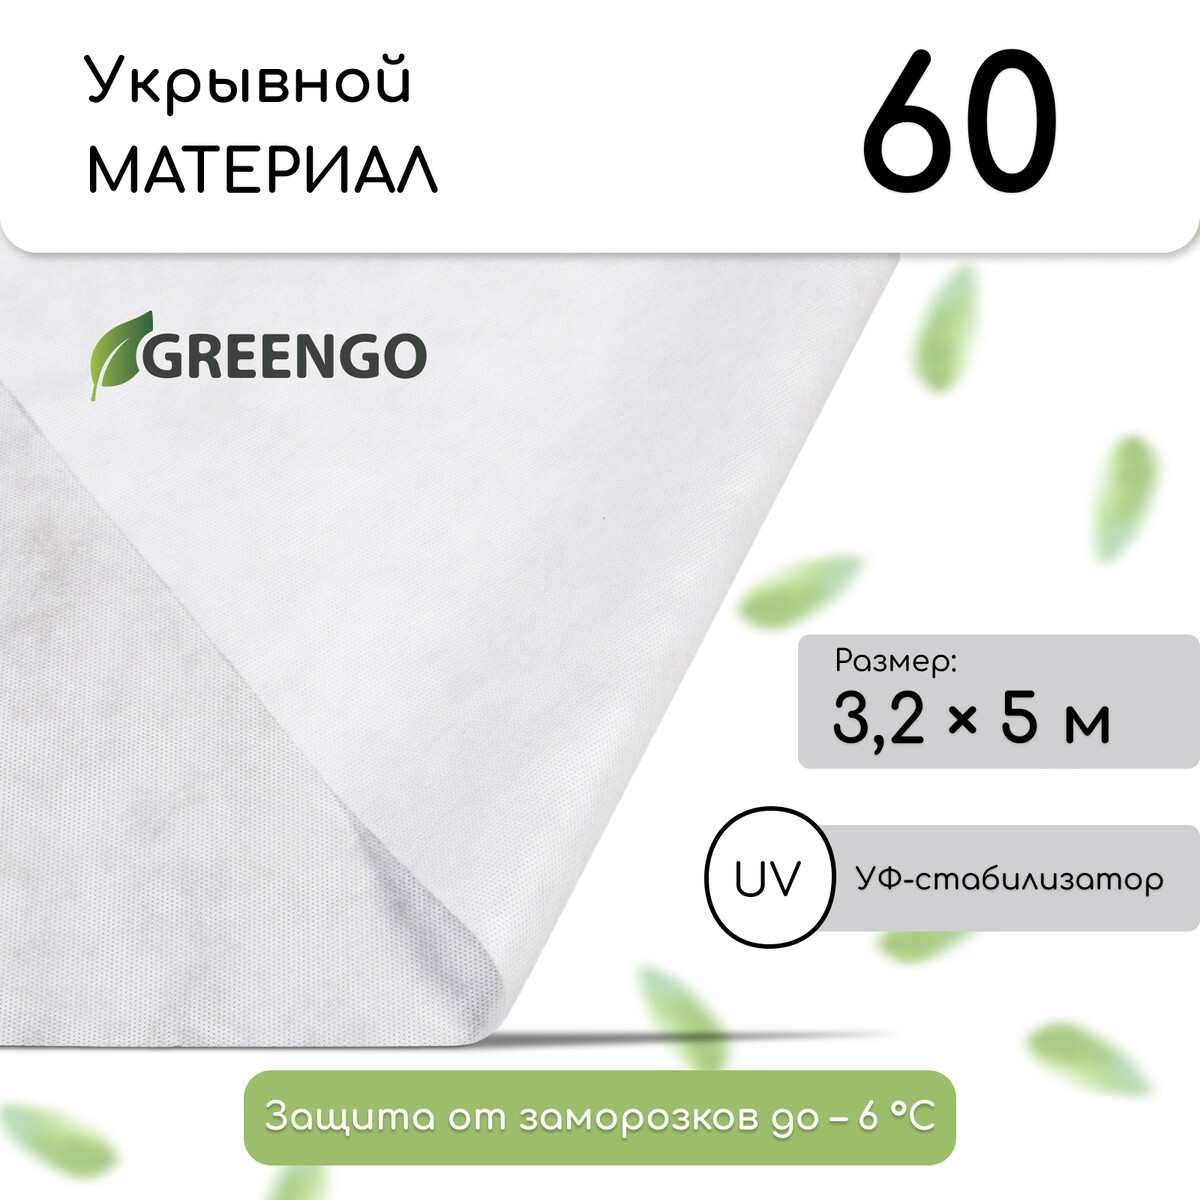 Материал укрывной, 5 × 3,2 м, плотность 60 г/м², спанбонд с уф-стабилизатором, белый, greengo, эконом 30%